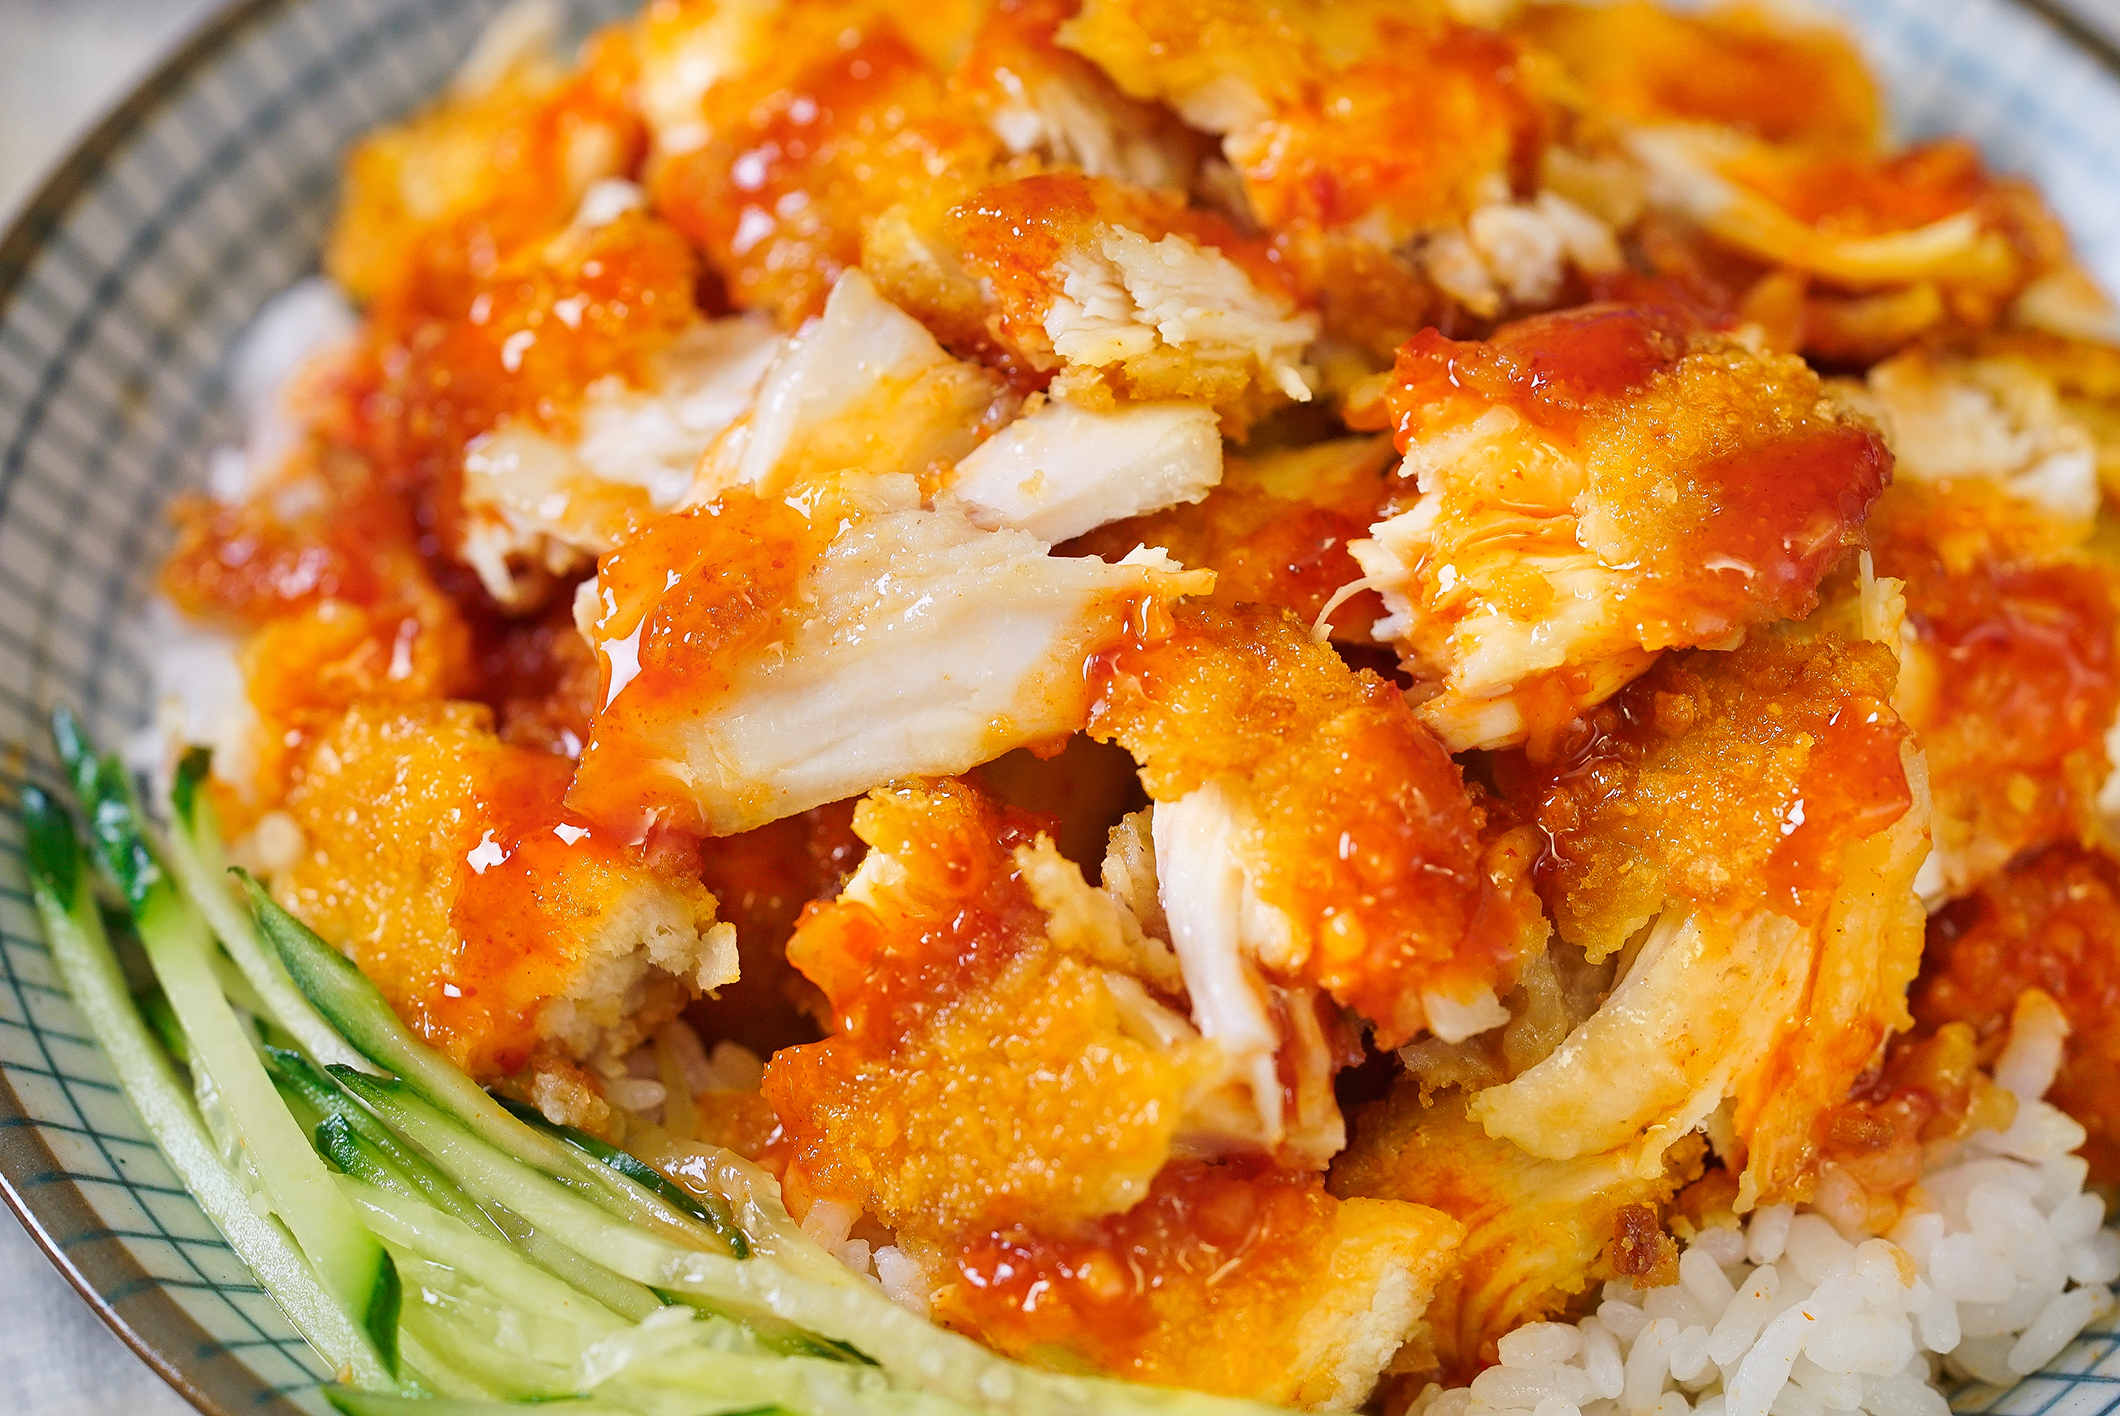 铺在热乎的米饭上,配点黄瓜丝,挤上泰式甜辣酱,脆皮鸡饭完成!